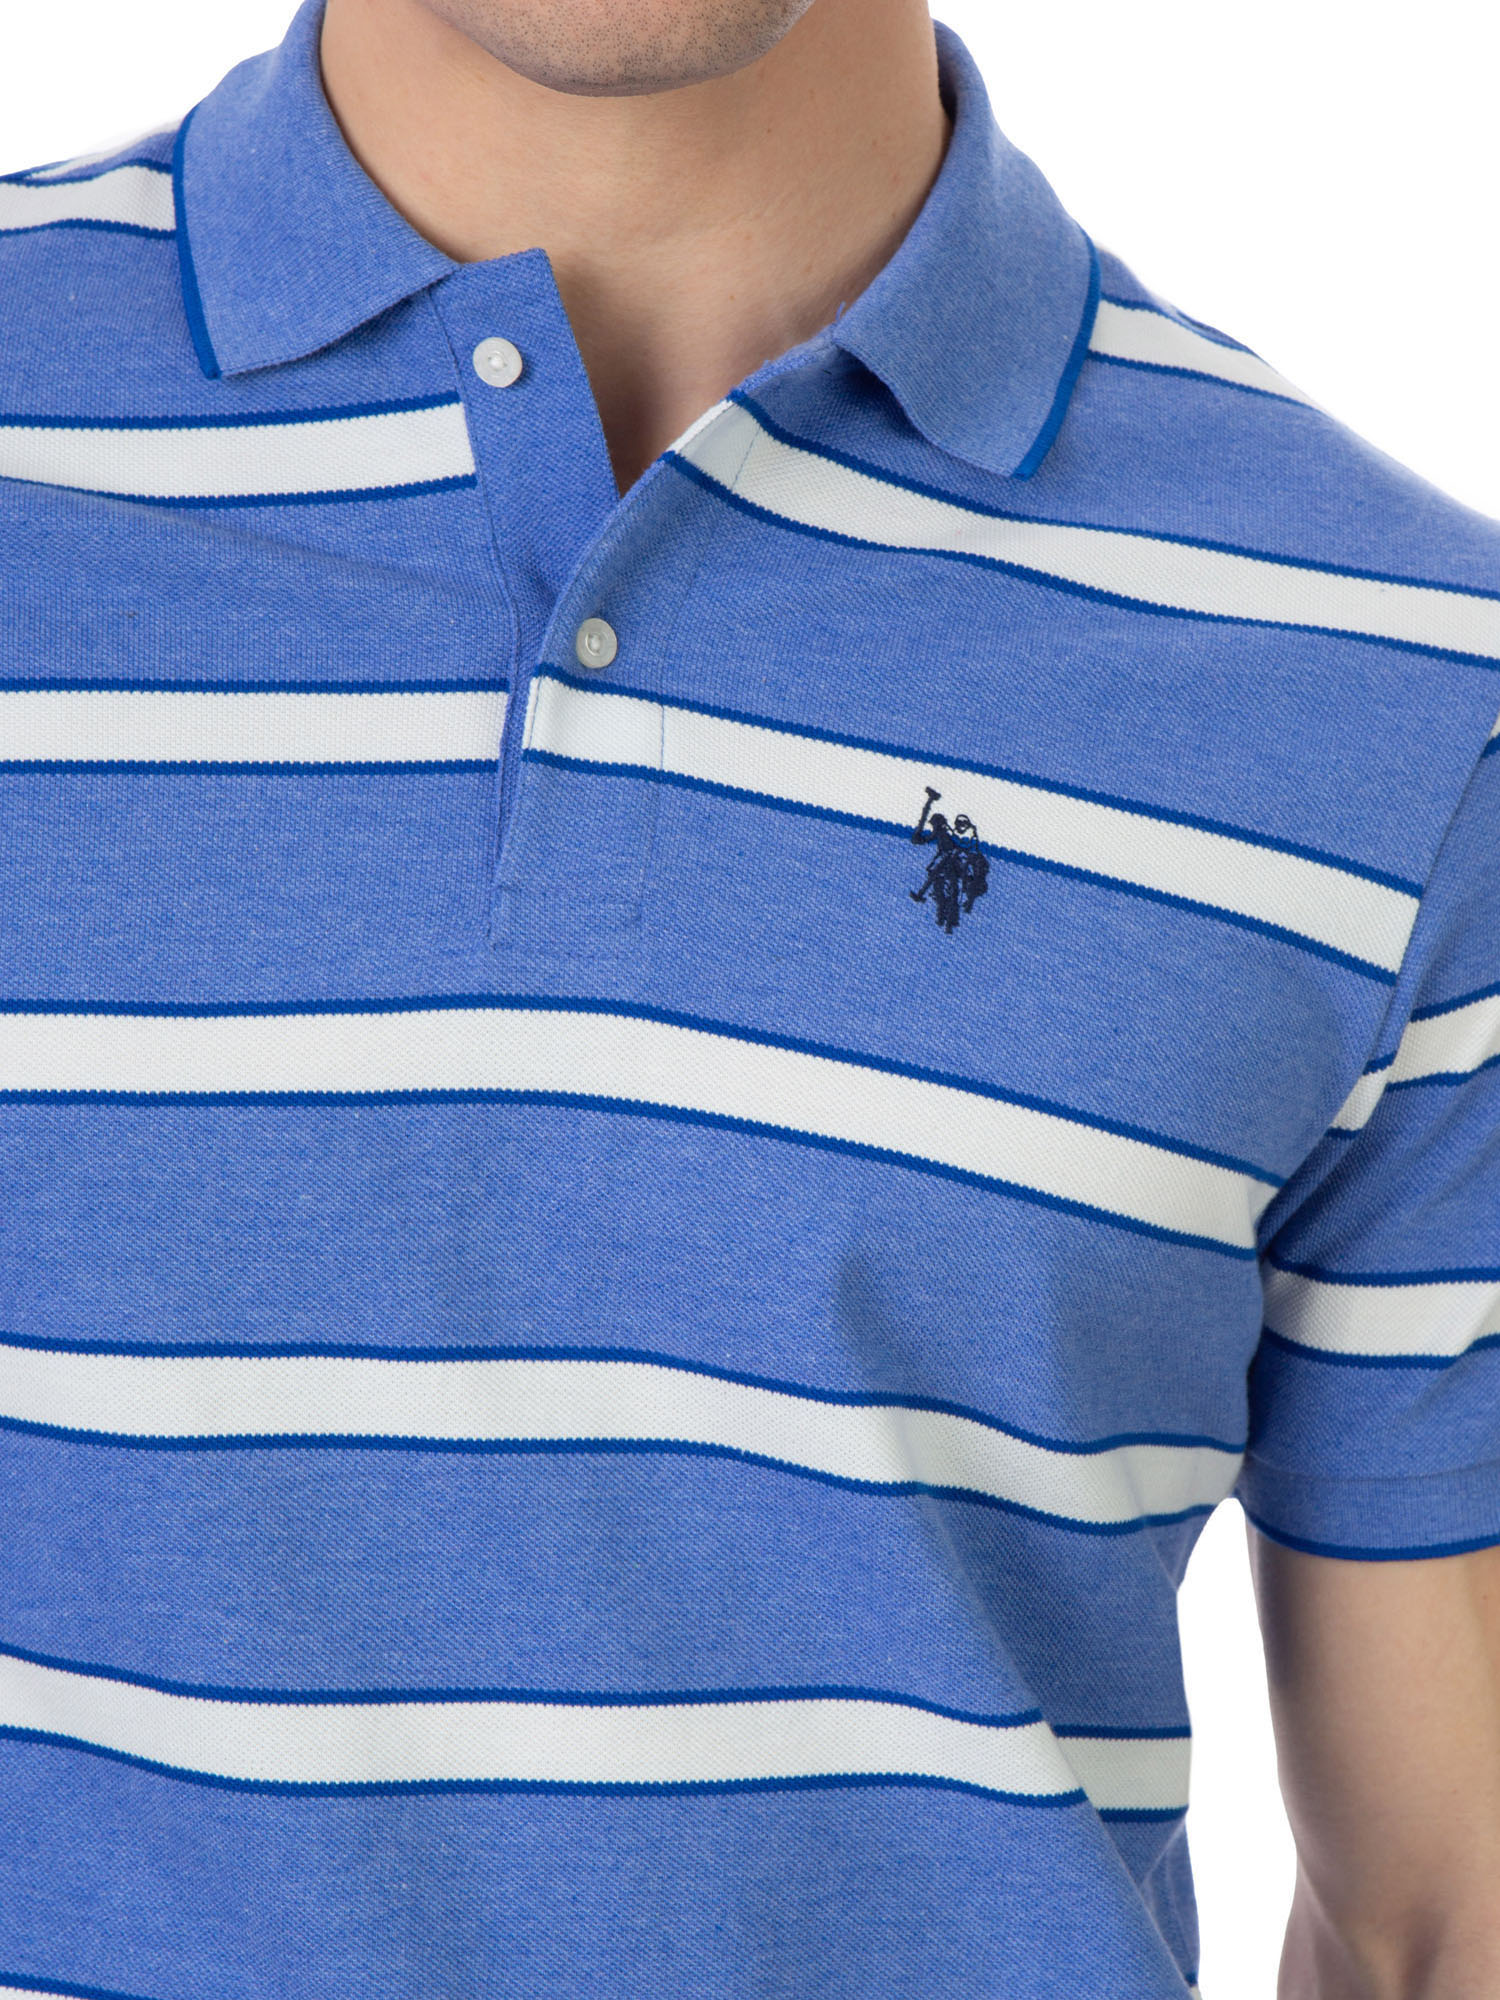 U.S. Polo Assn. Men's Striped Pique Polo Shirt - image 4 of 5